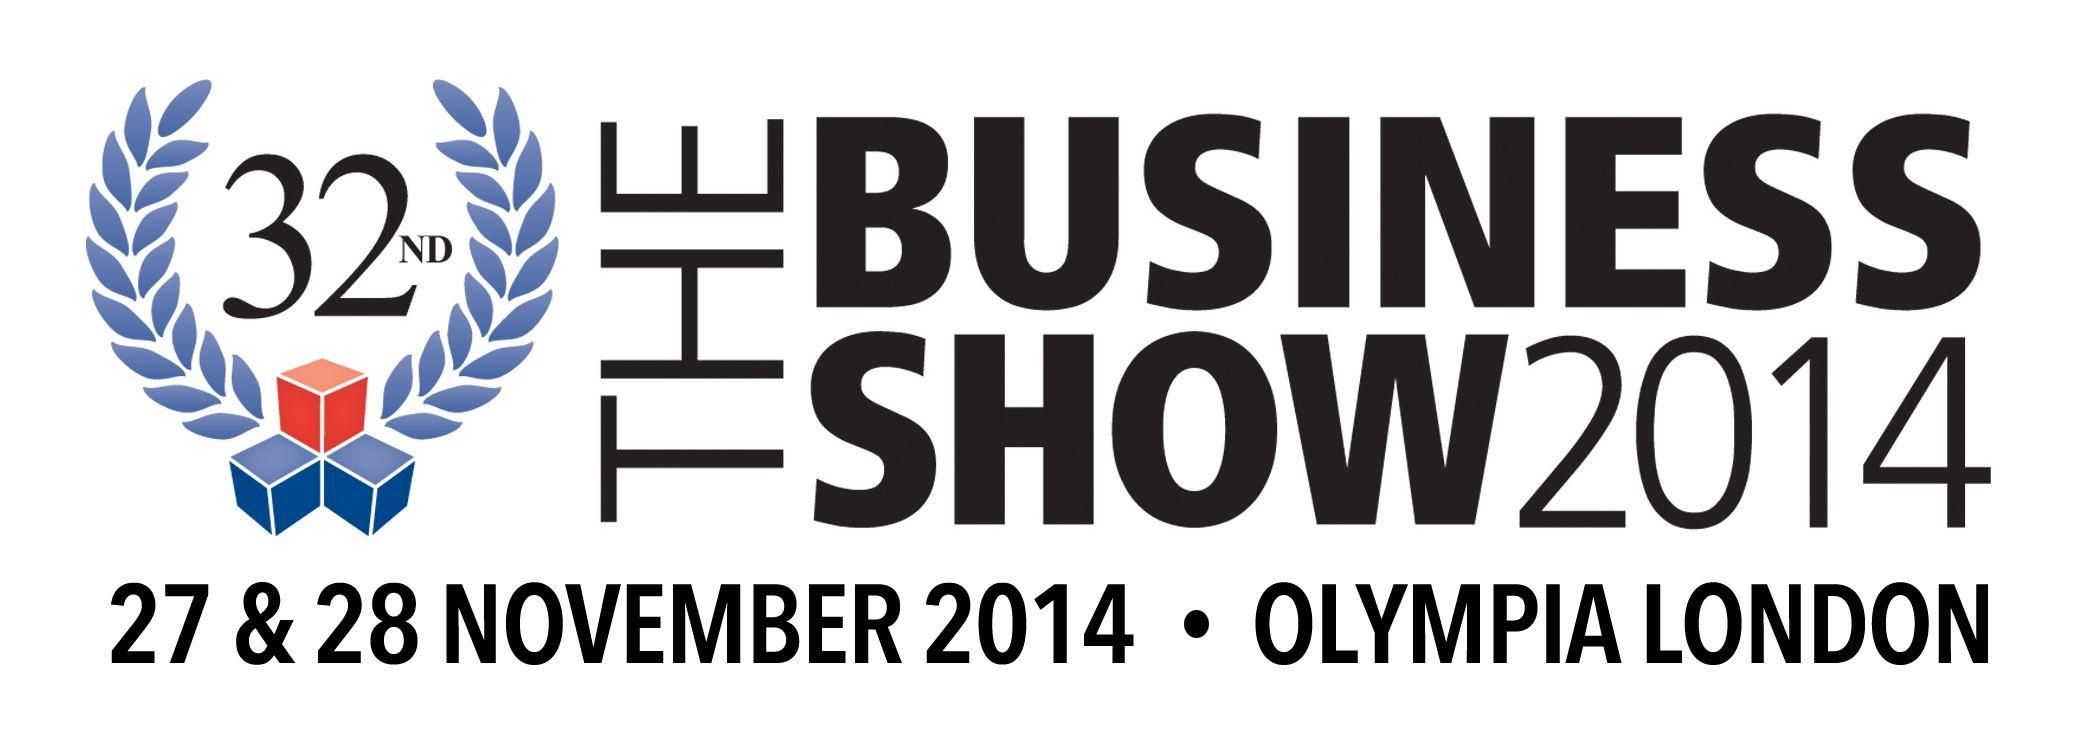 All Business Show Logo - The Business Show 27 28 November 2014